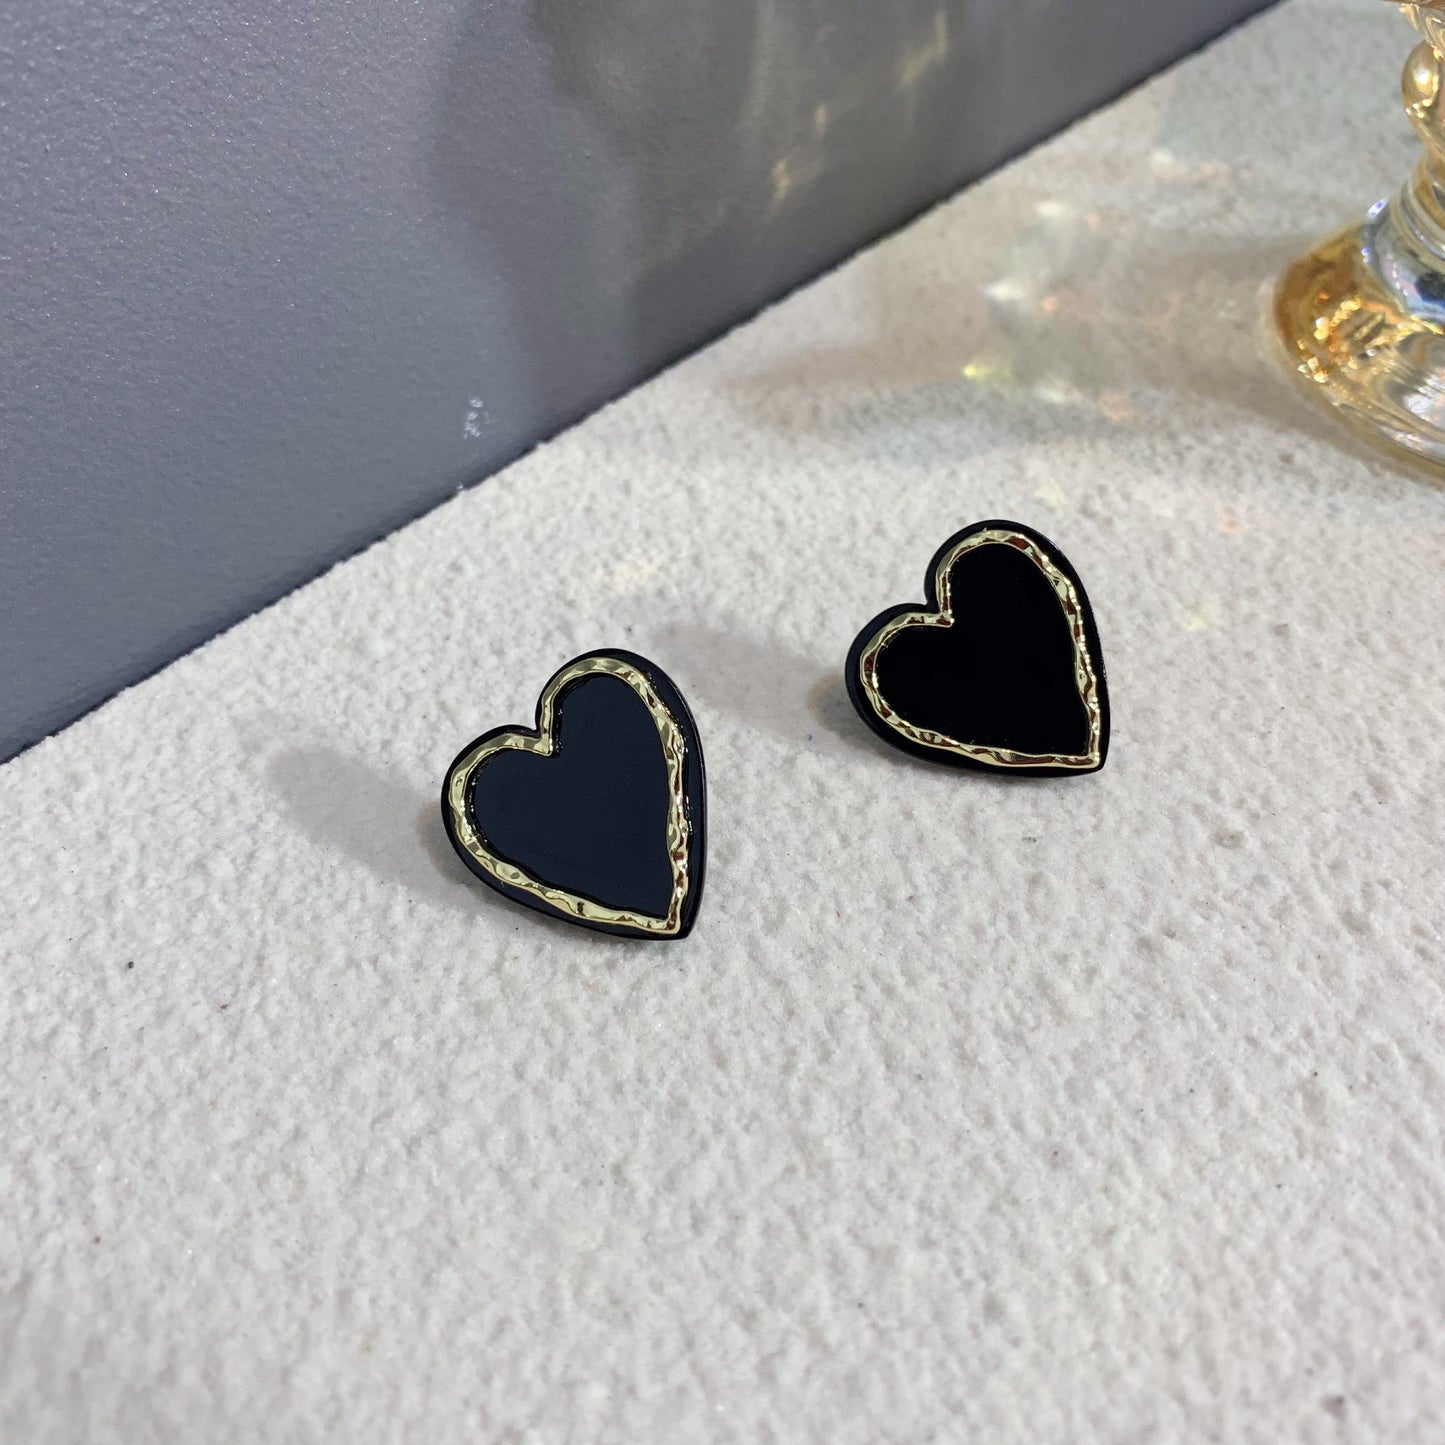 Women's Edge Lovely Acrylic For Black Heart Earrings